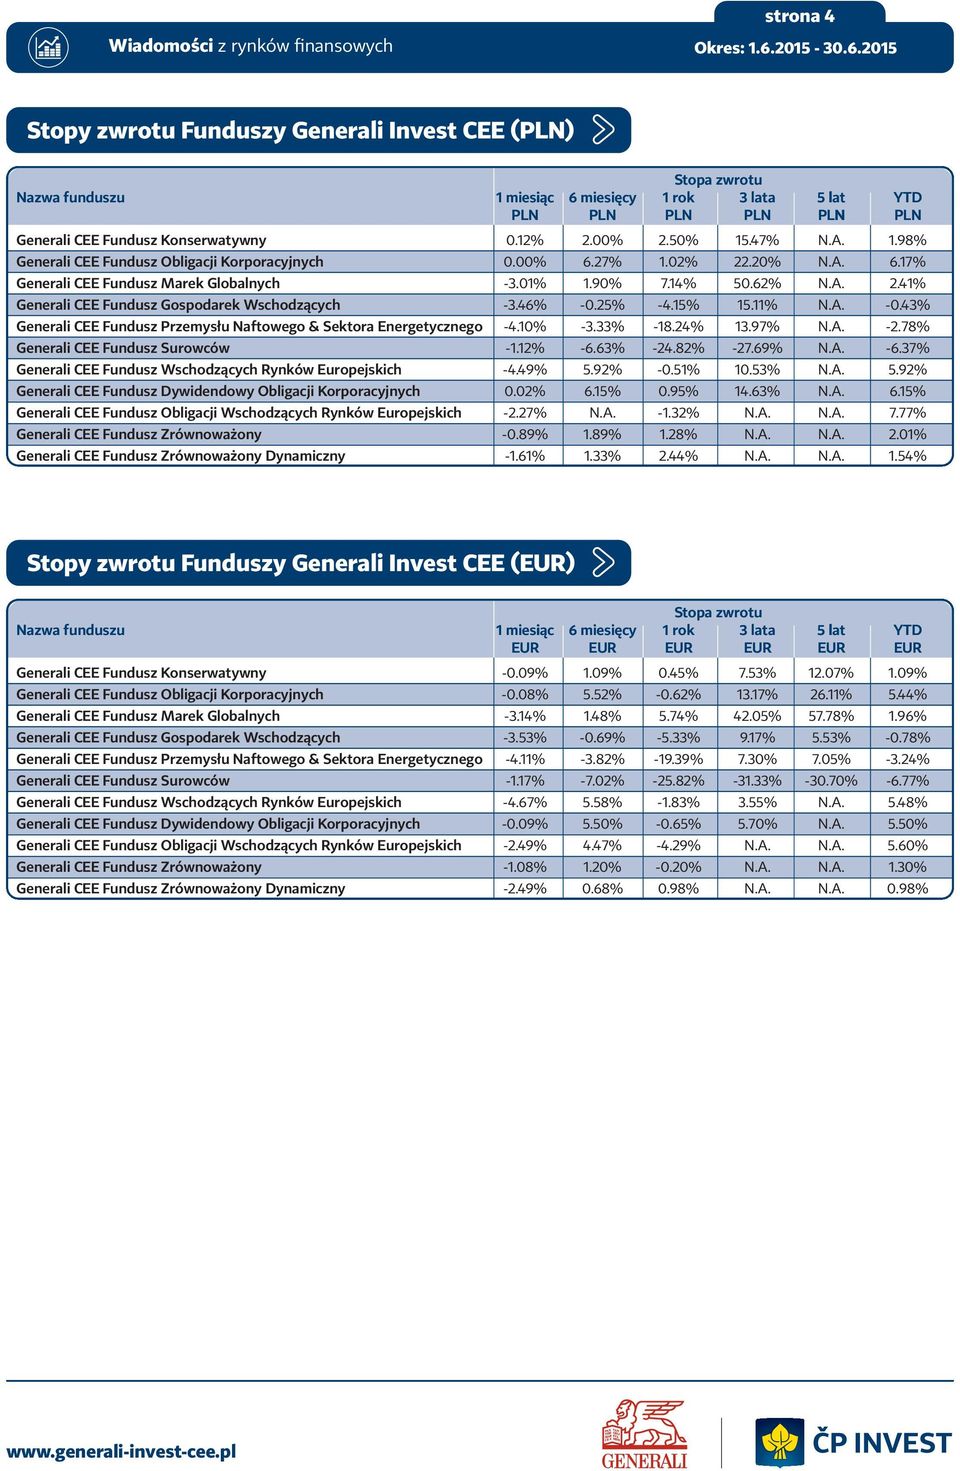 46% -0.25% -4.15% 15.11% N.A. -0.43% Generali CEE Fundusz Przemysłu Naftowego & Sektora Energetycznego -4.10% -3.33% -18.24% 13.97% N.A. -2.78% Generali CEE Fundusz Surowców -1.12% -6.63% -24.82% -27.